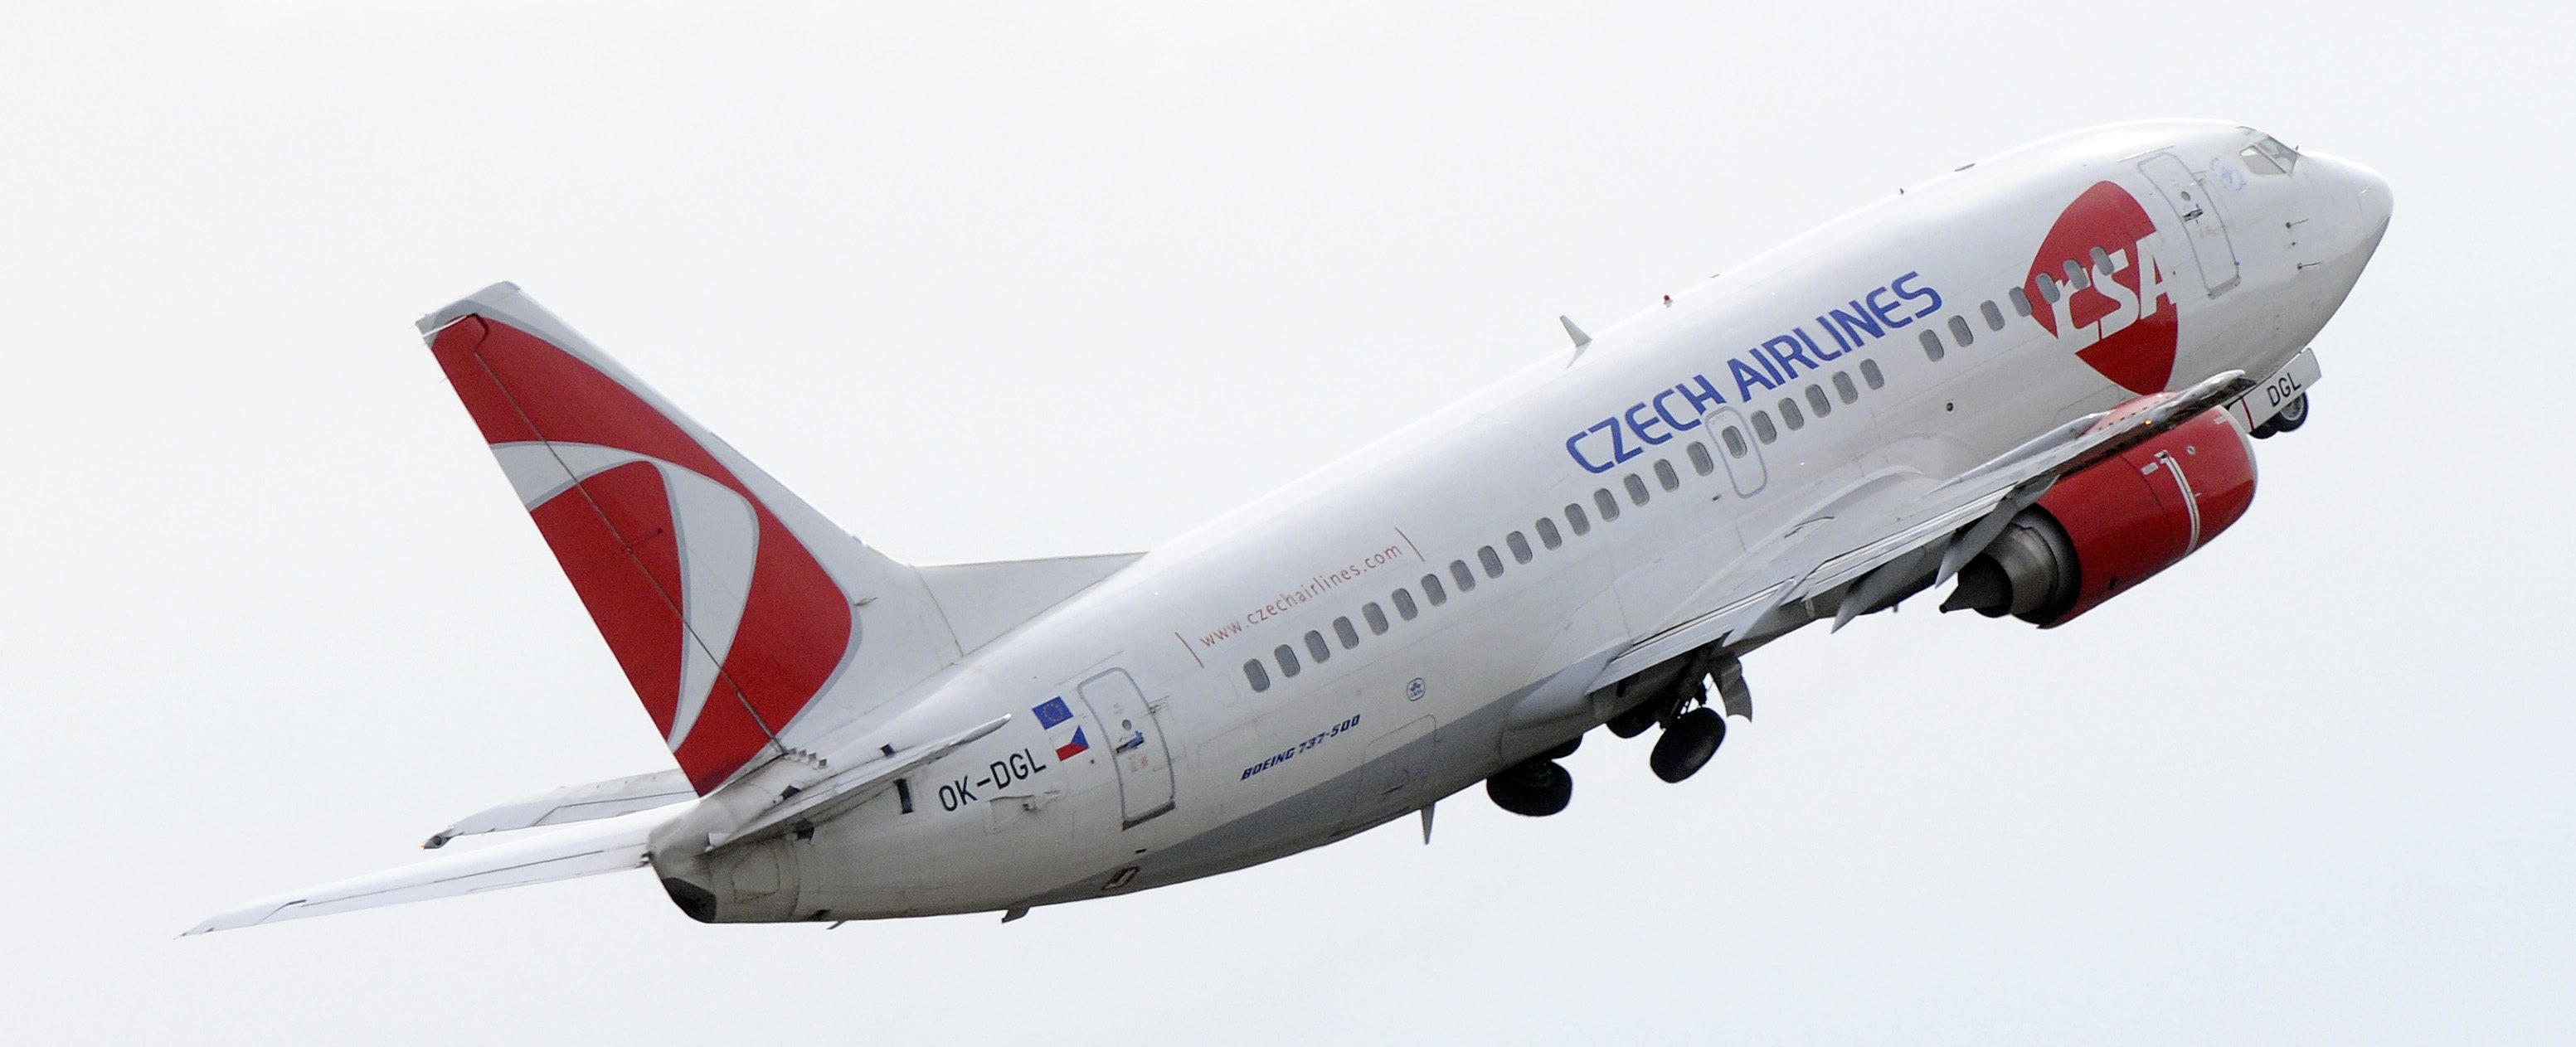 Czech Airlines meddelade att passagerarnas säkerhet aldrig var i fara, trots att andrepiloten tvingades nödlanda.